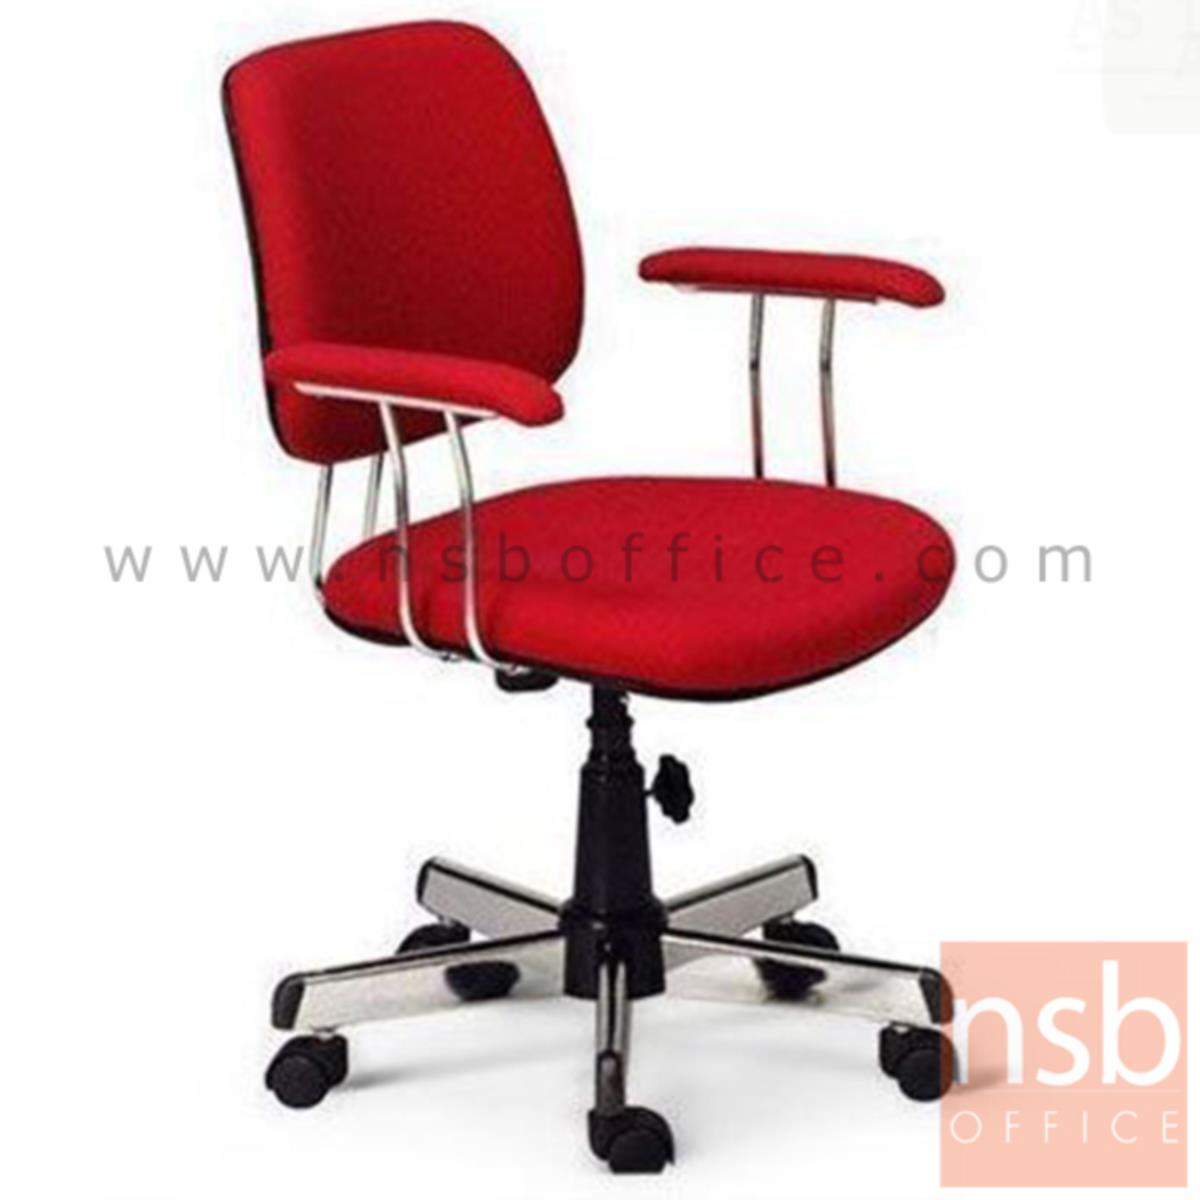 B03A469:เก้าอี้สำนักงาน  รุ่น Beatrix (เบียทริกซ์)  มีก้อนโยก ขาเหล็กชุบโครเมี่ยม